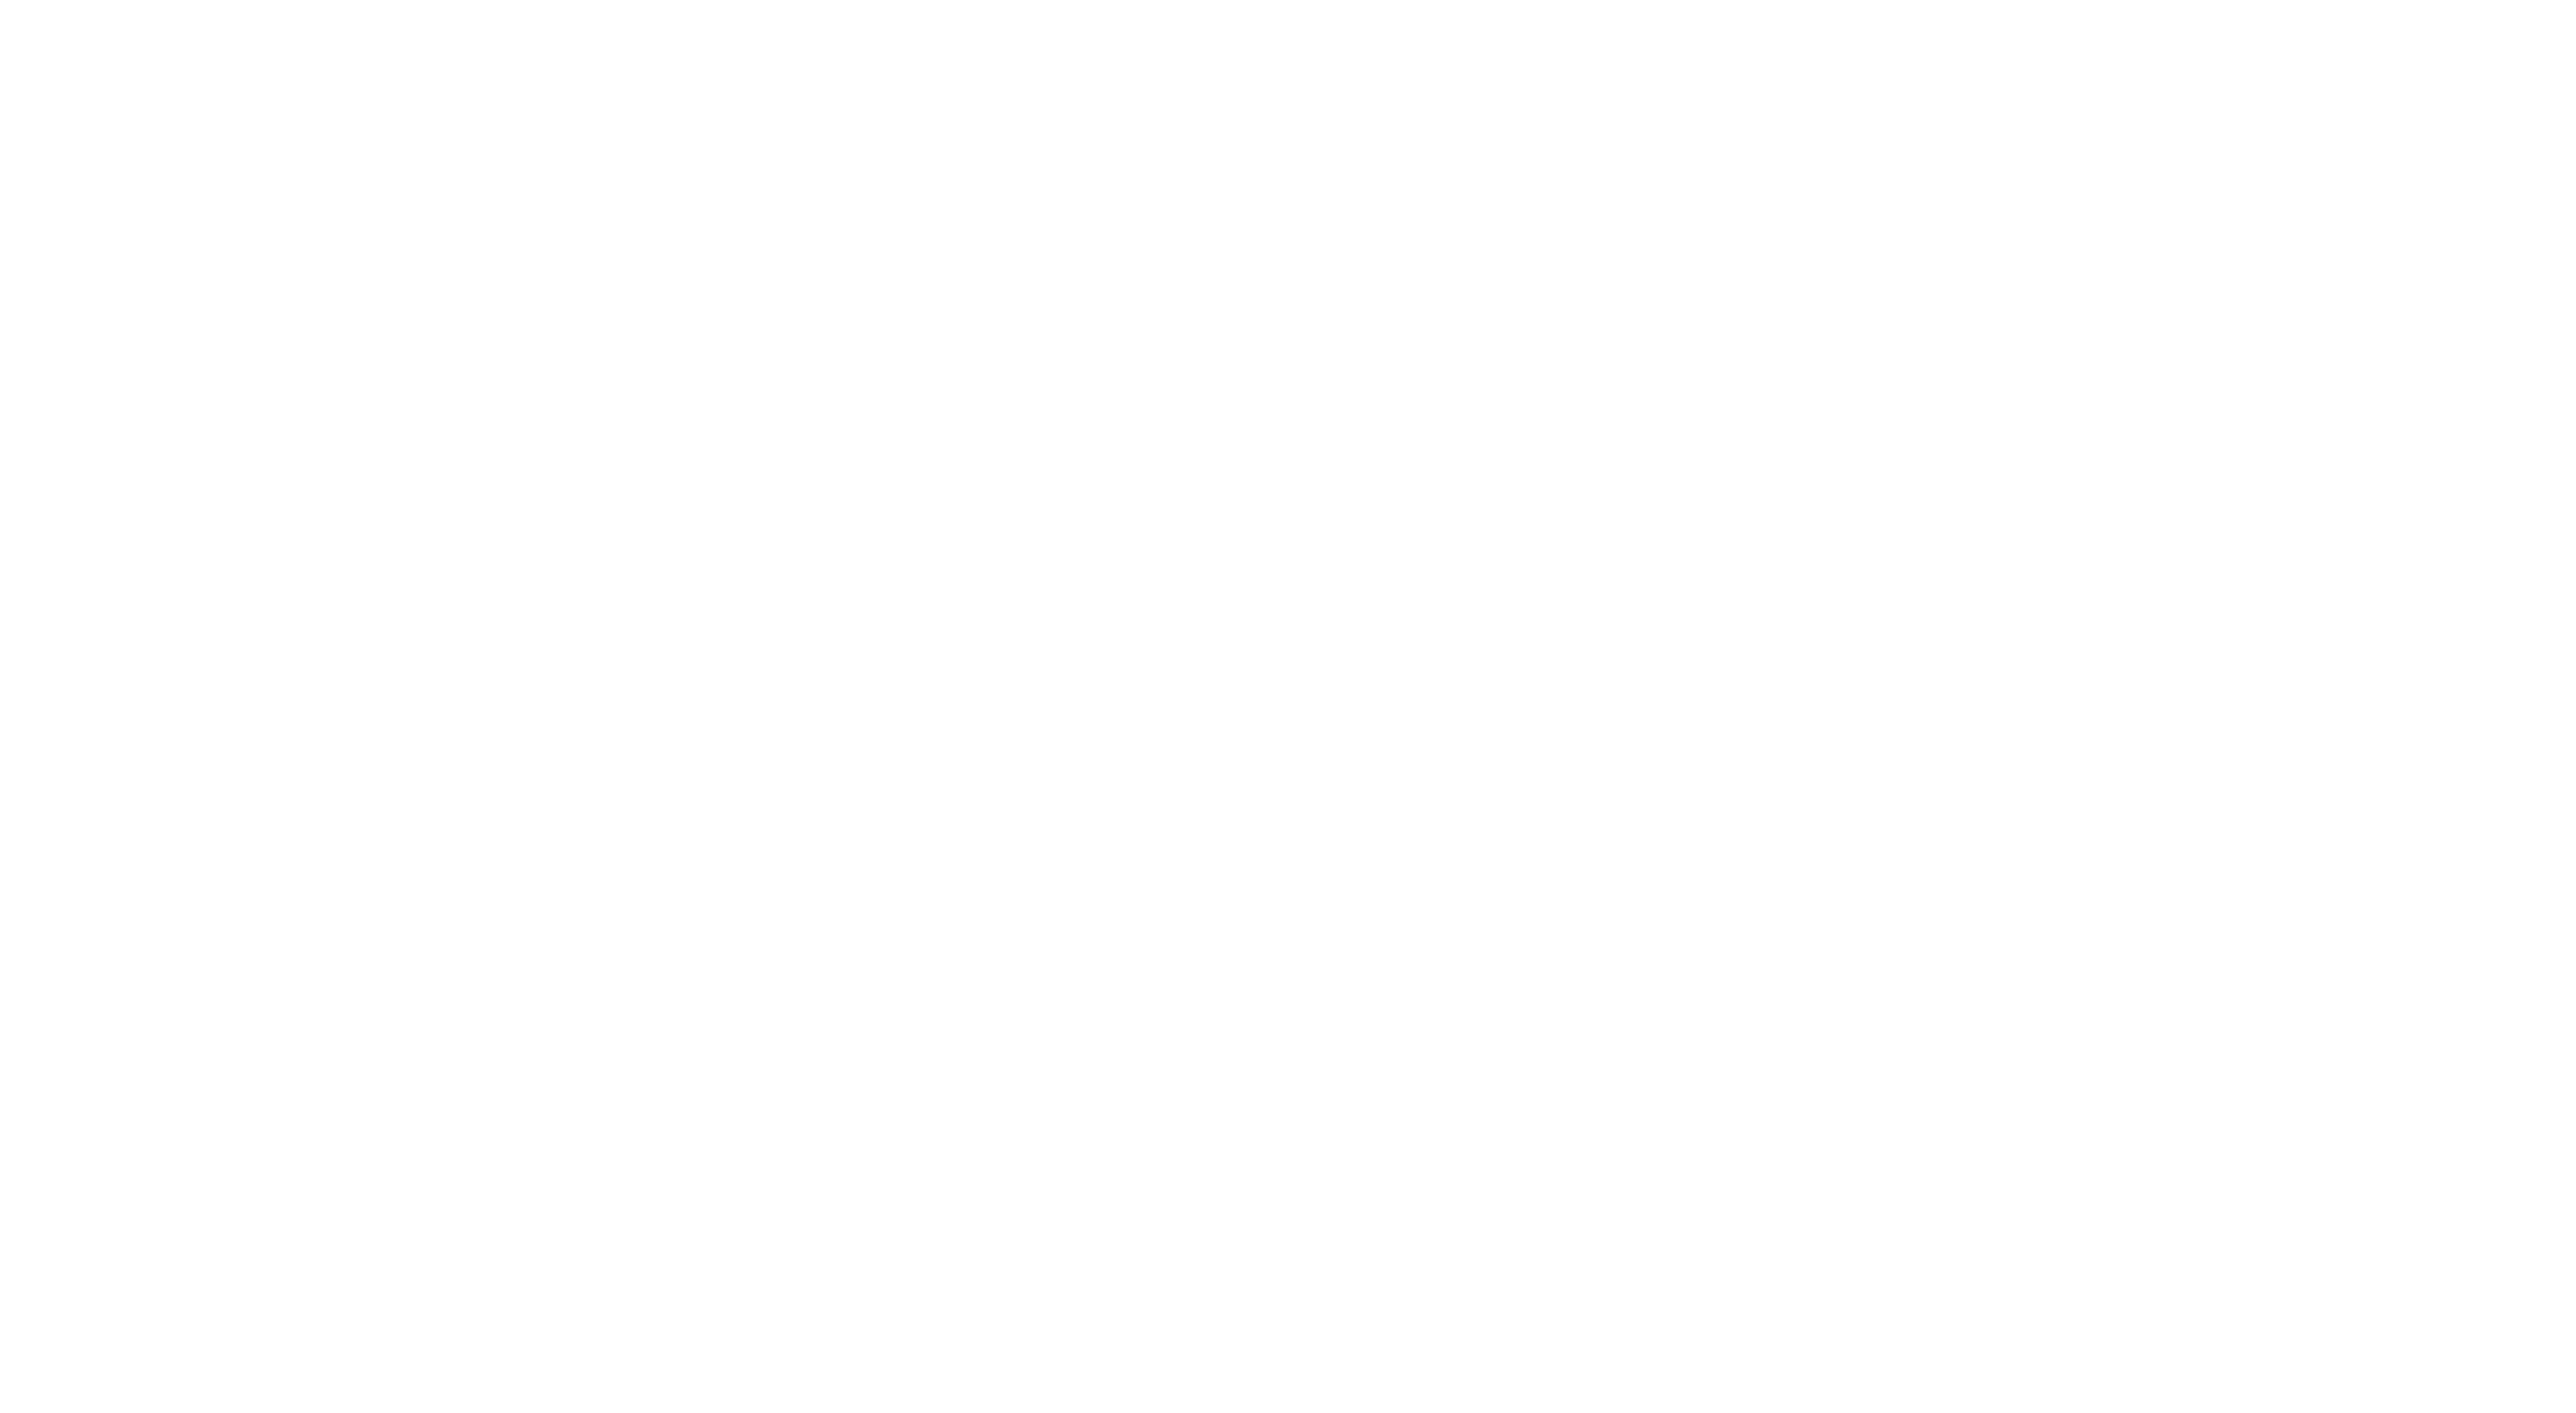 Lutherischer Weltbund